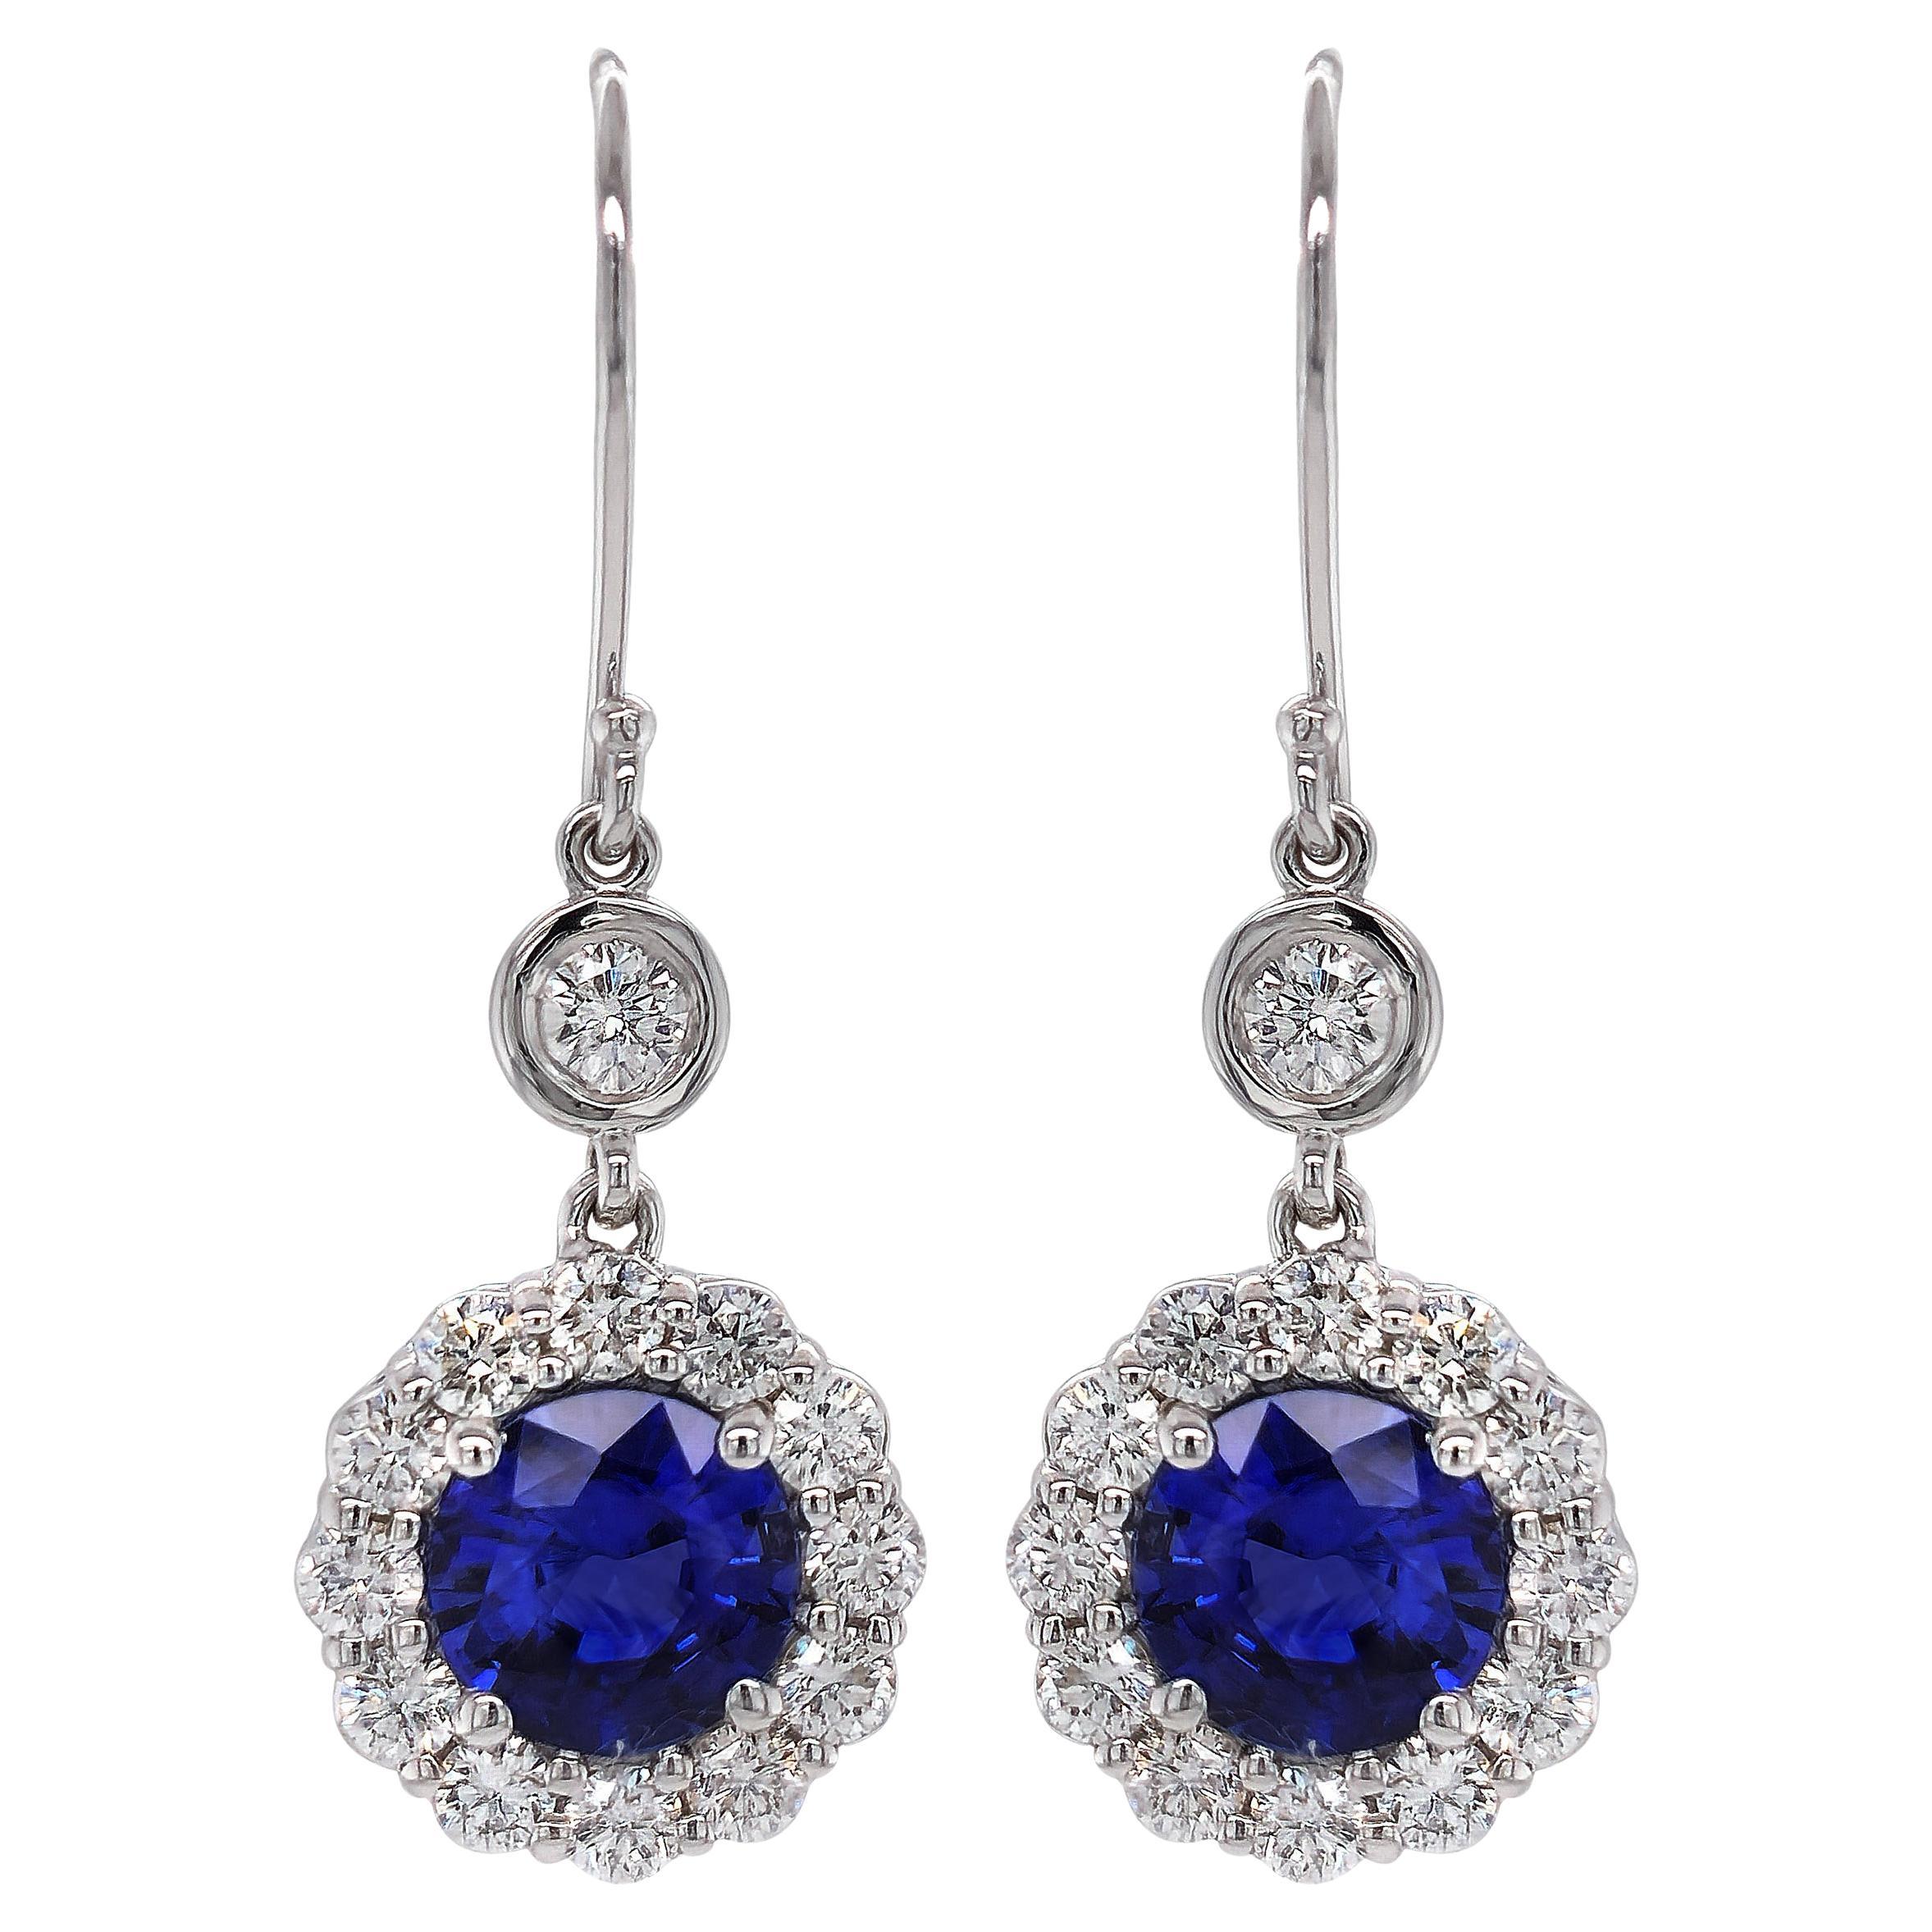 Boucles d'oreilles en or blanc 18 carats serties de saphirs bleus naturels de 2,24 carats et diamants